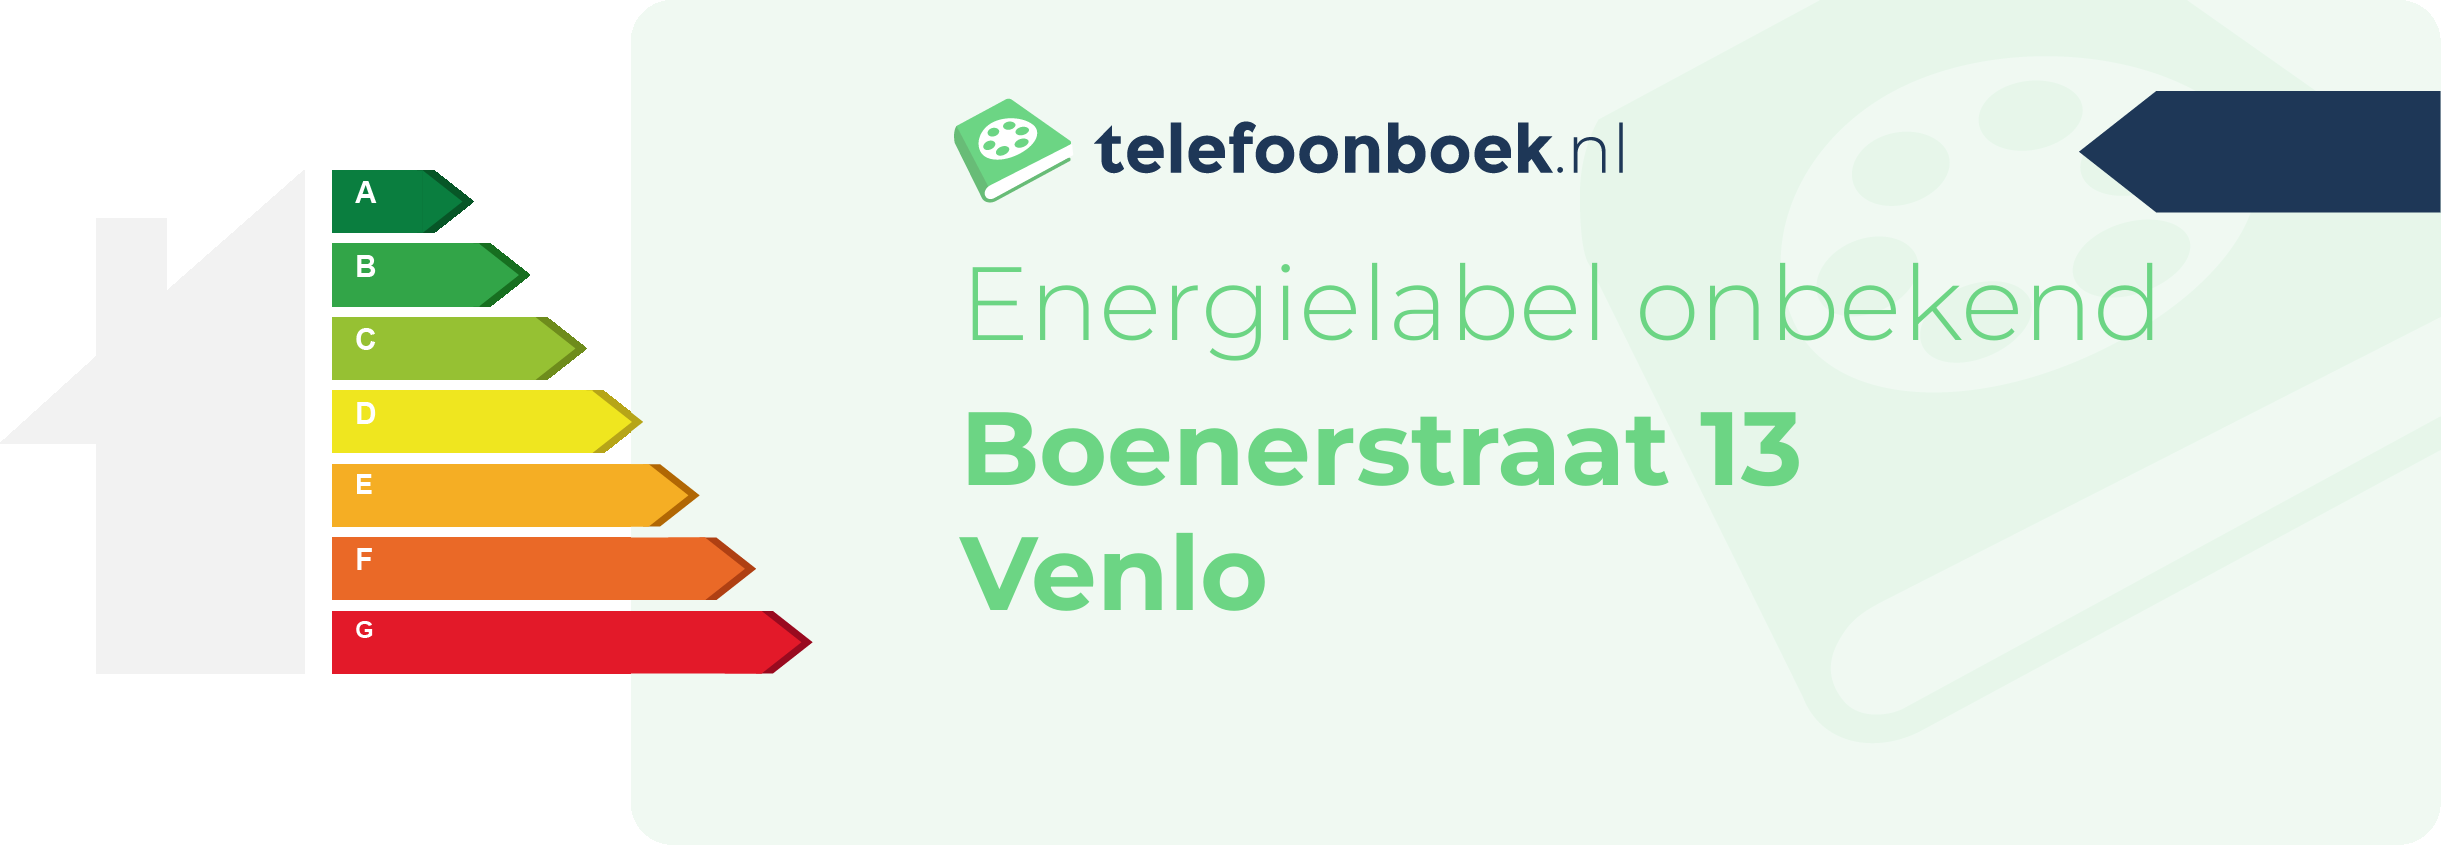 Energielabel Boenerstraat 13 Venlo